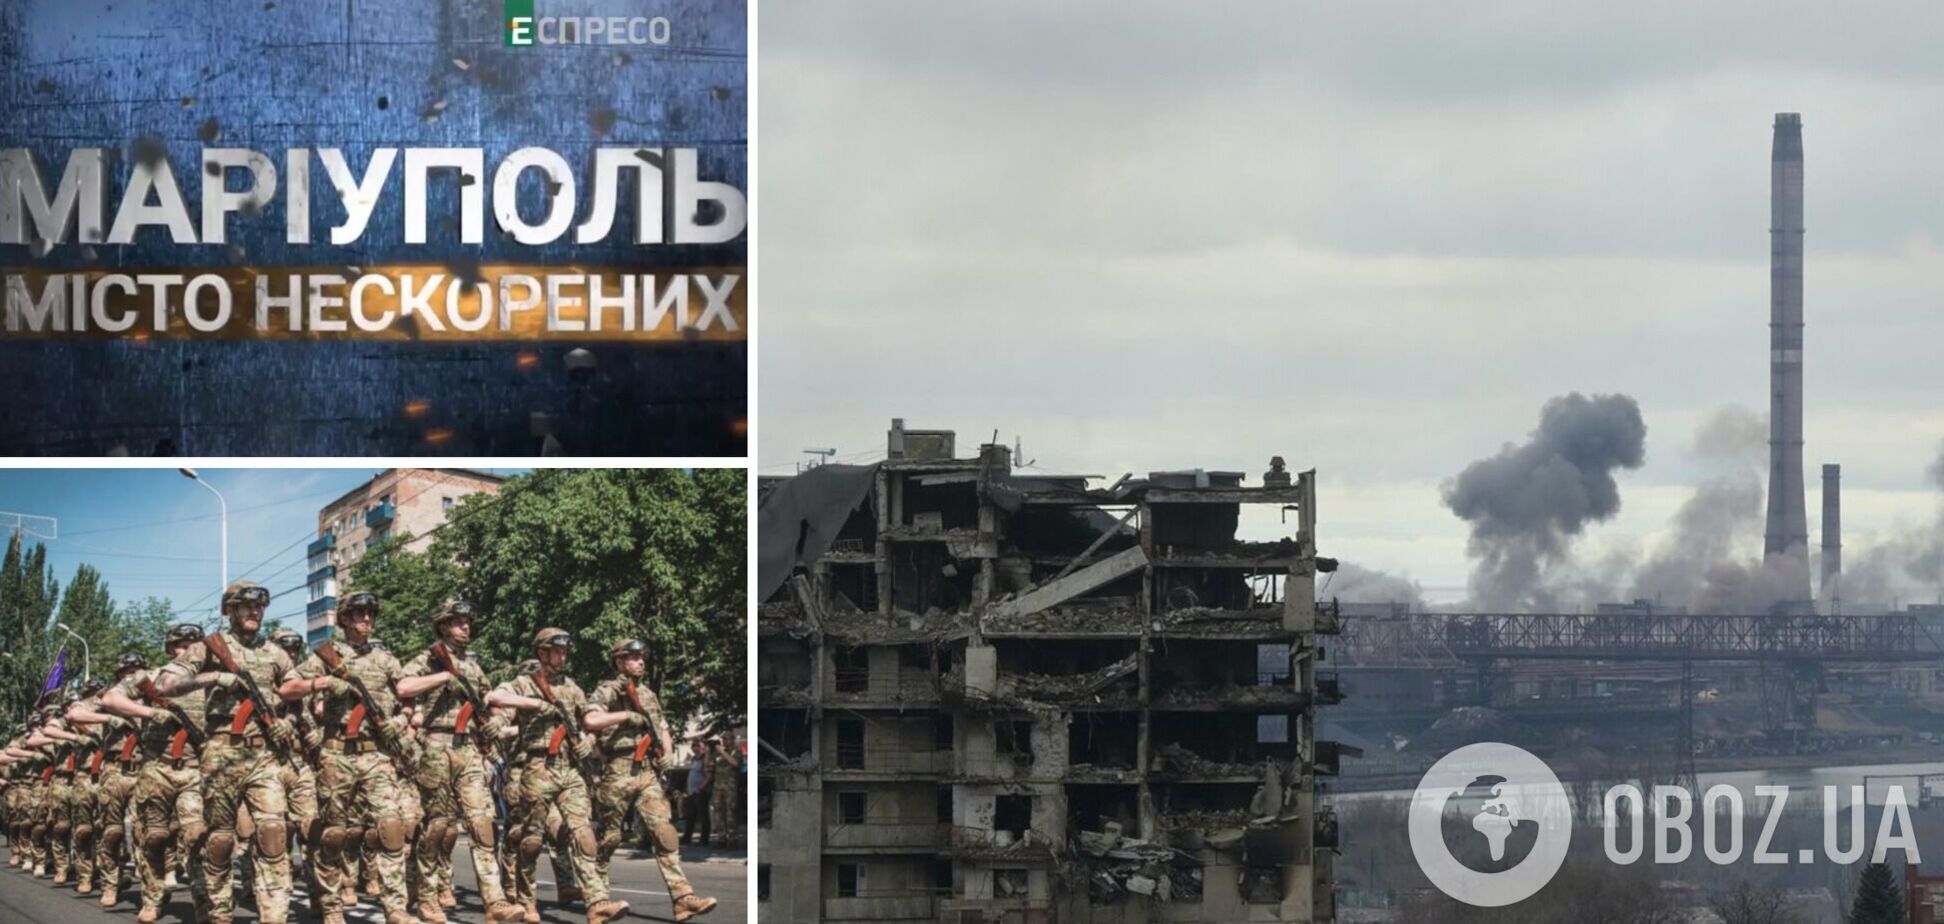 'Мариуполь. Город непокоренных': в Украине покажут документальный фильм о битве за город